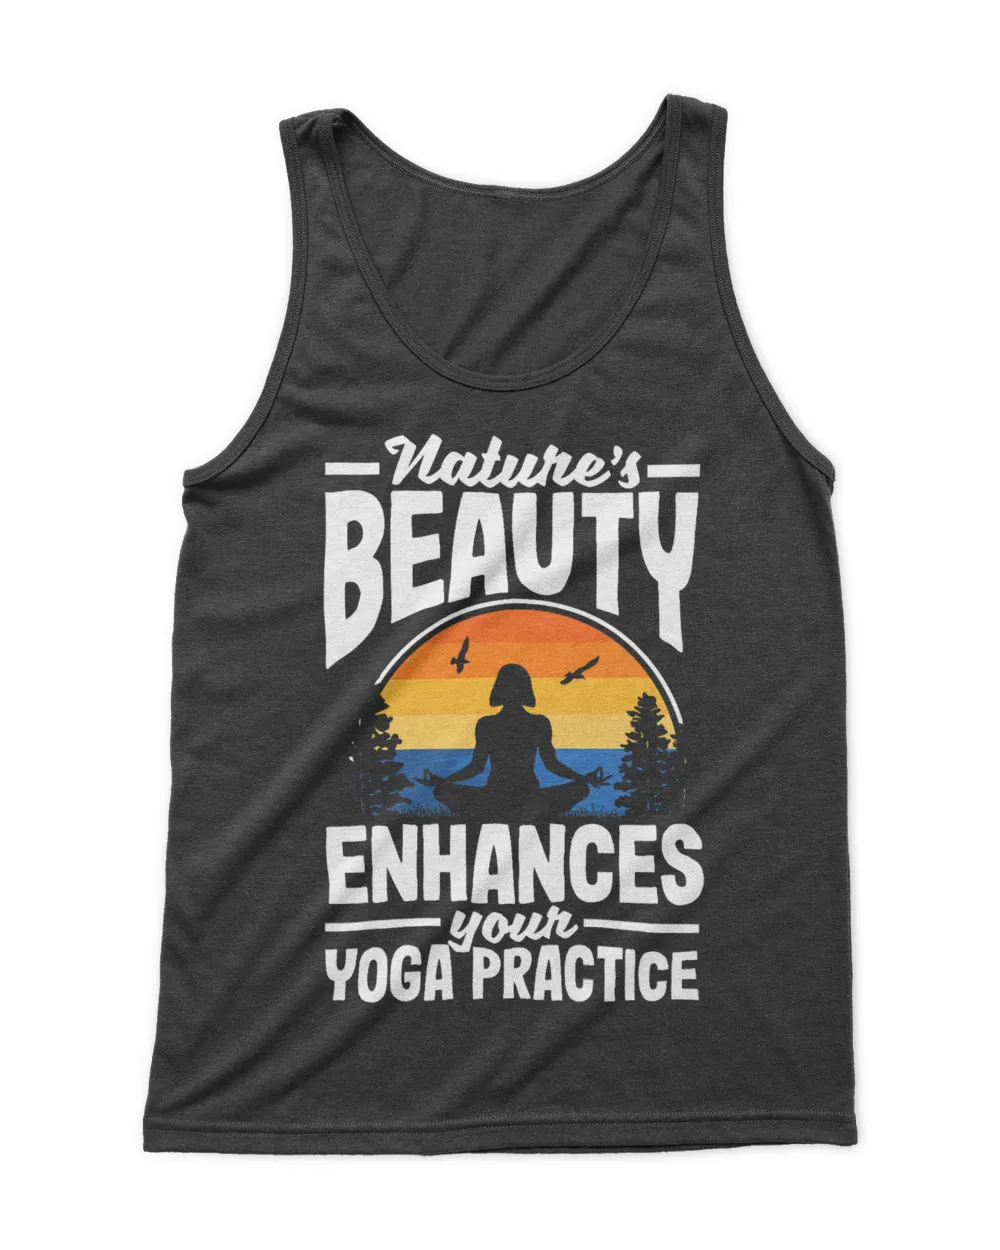 Natures beauty enhances your yoga practice